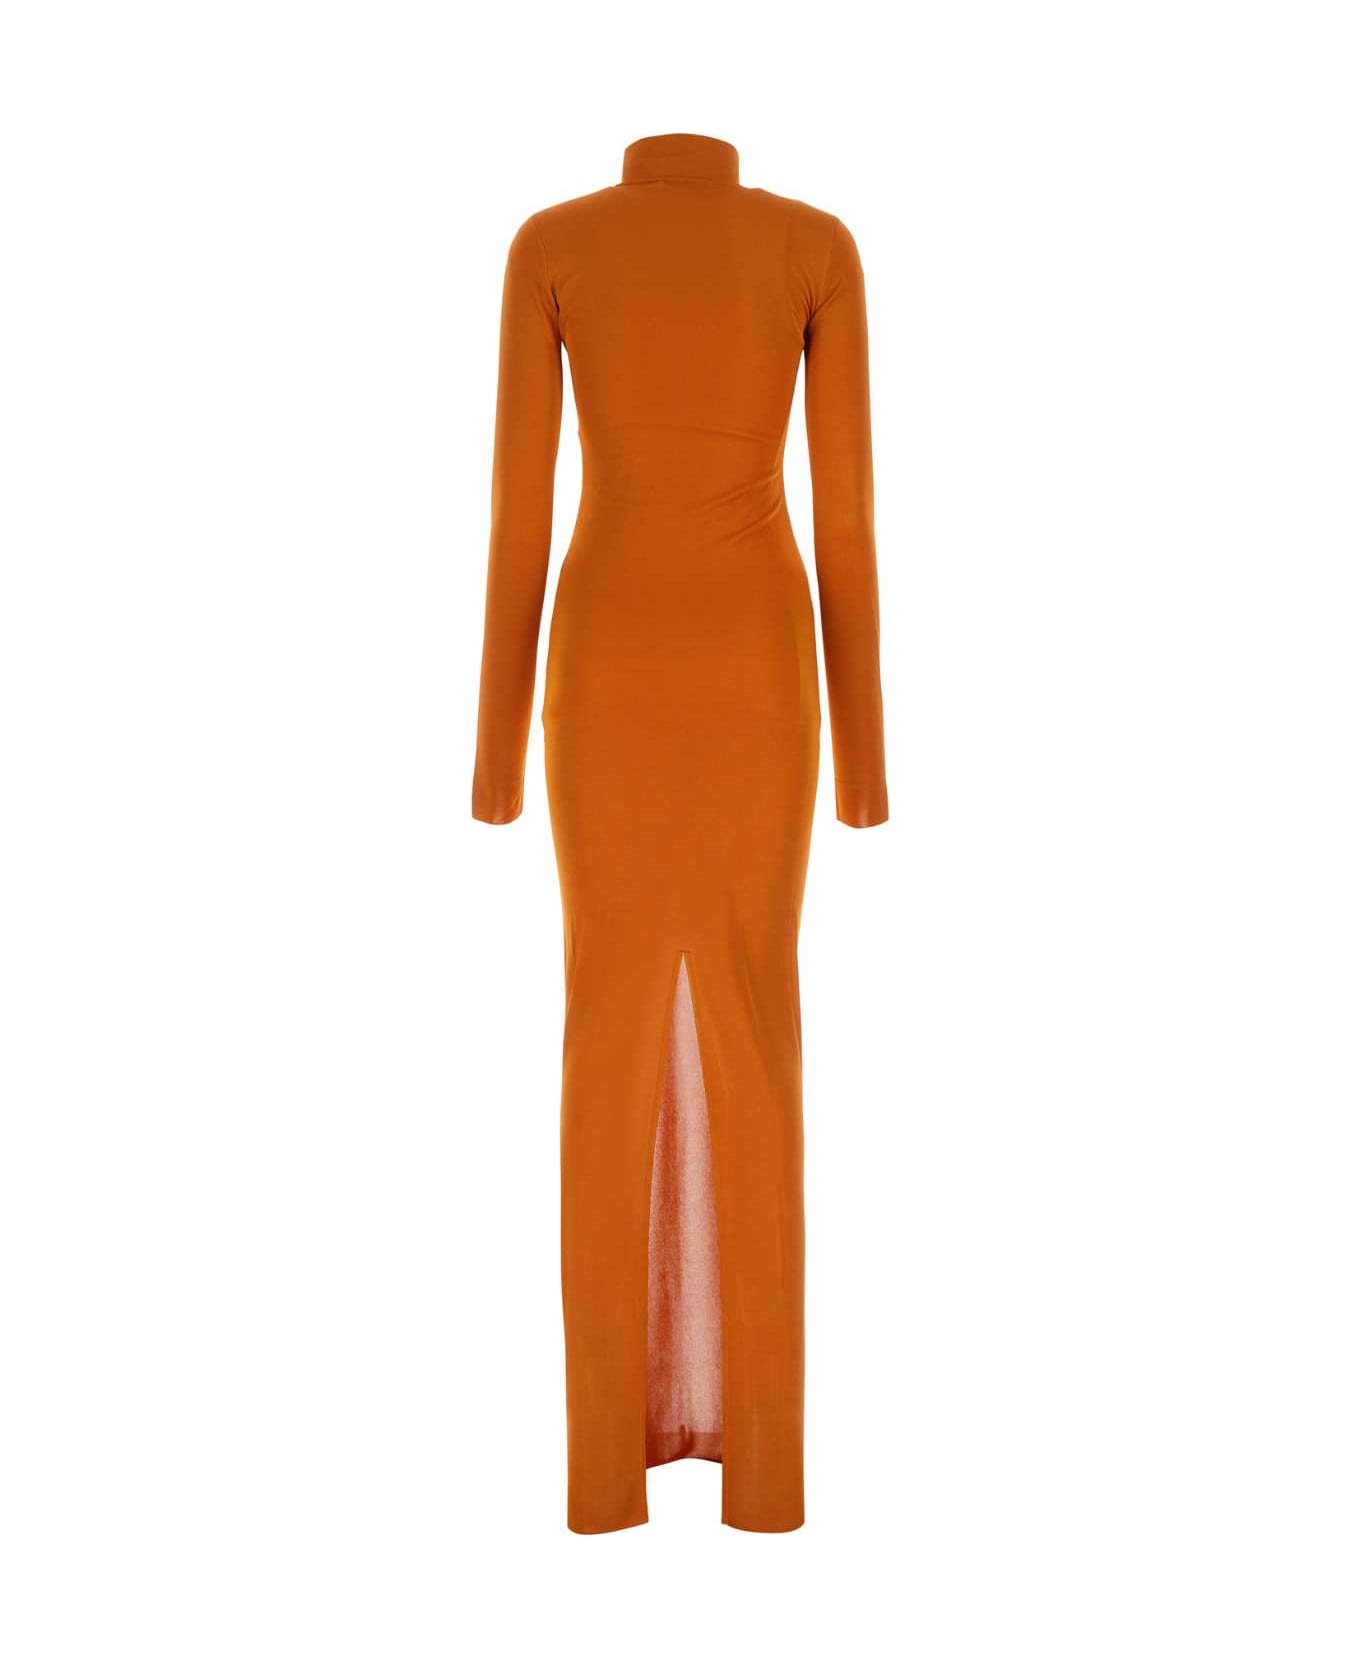 Saint Laurent Copper Viscose Long Dress - ORANGE